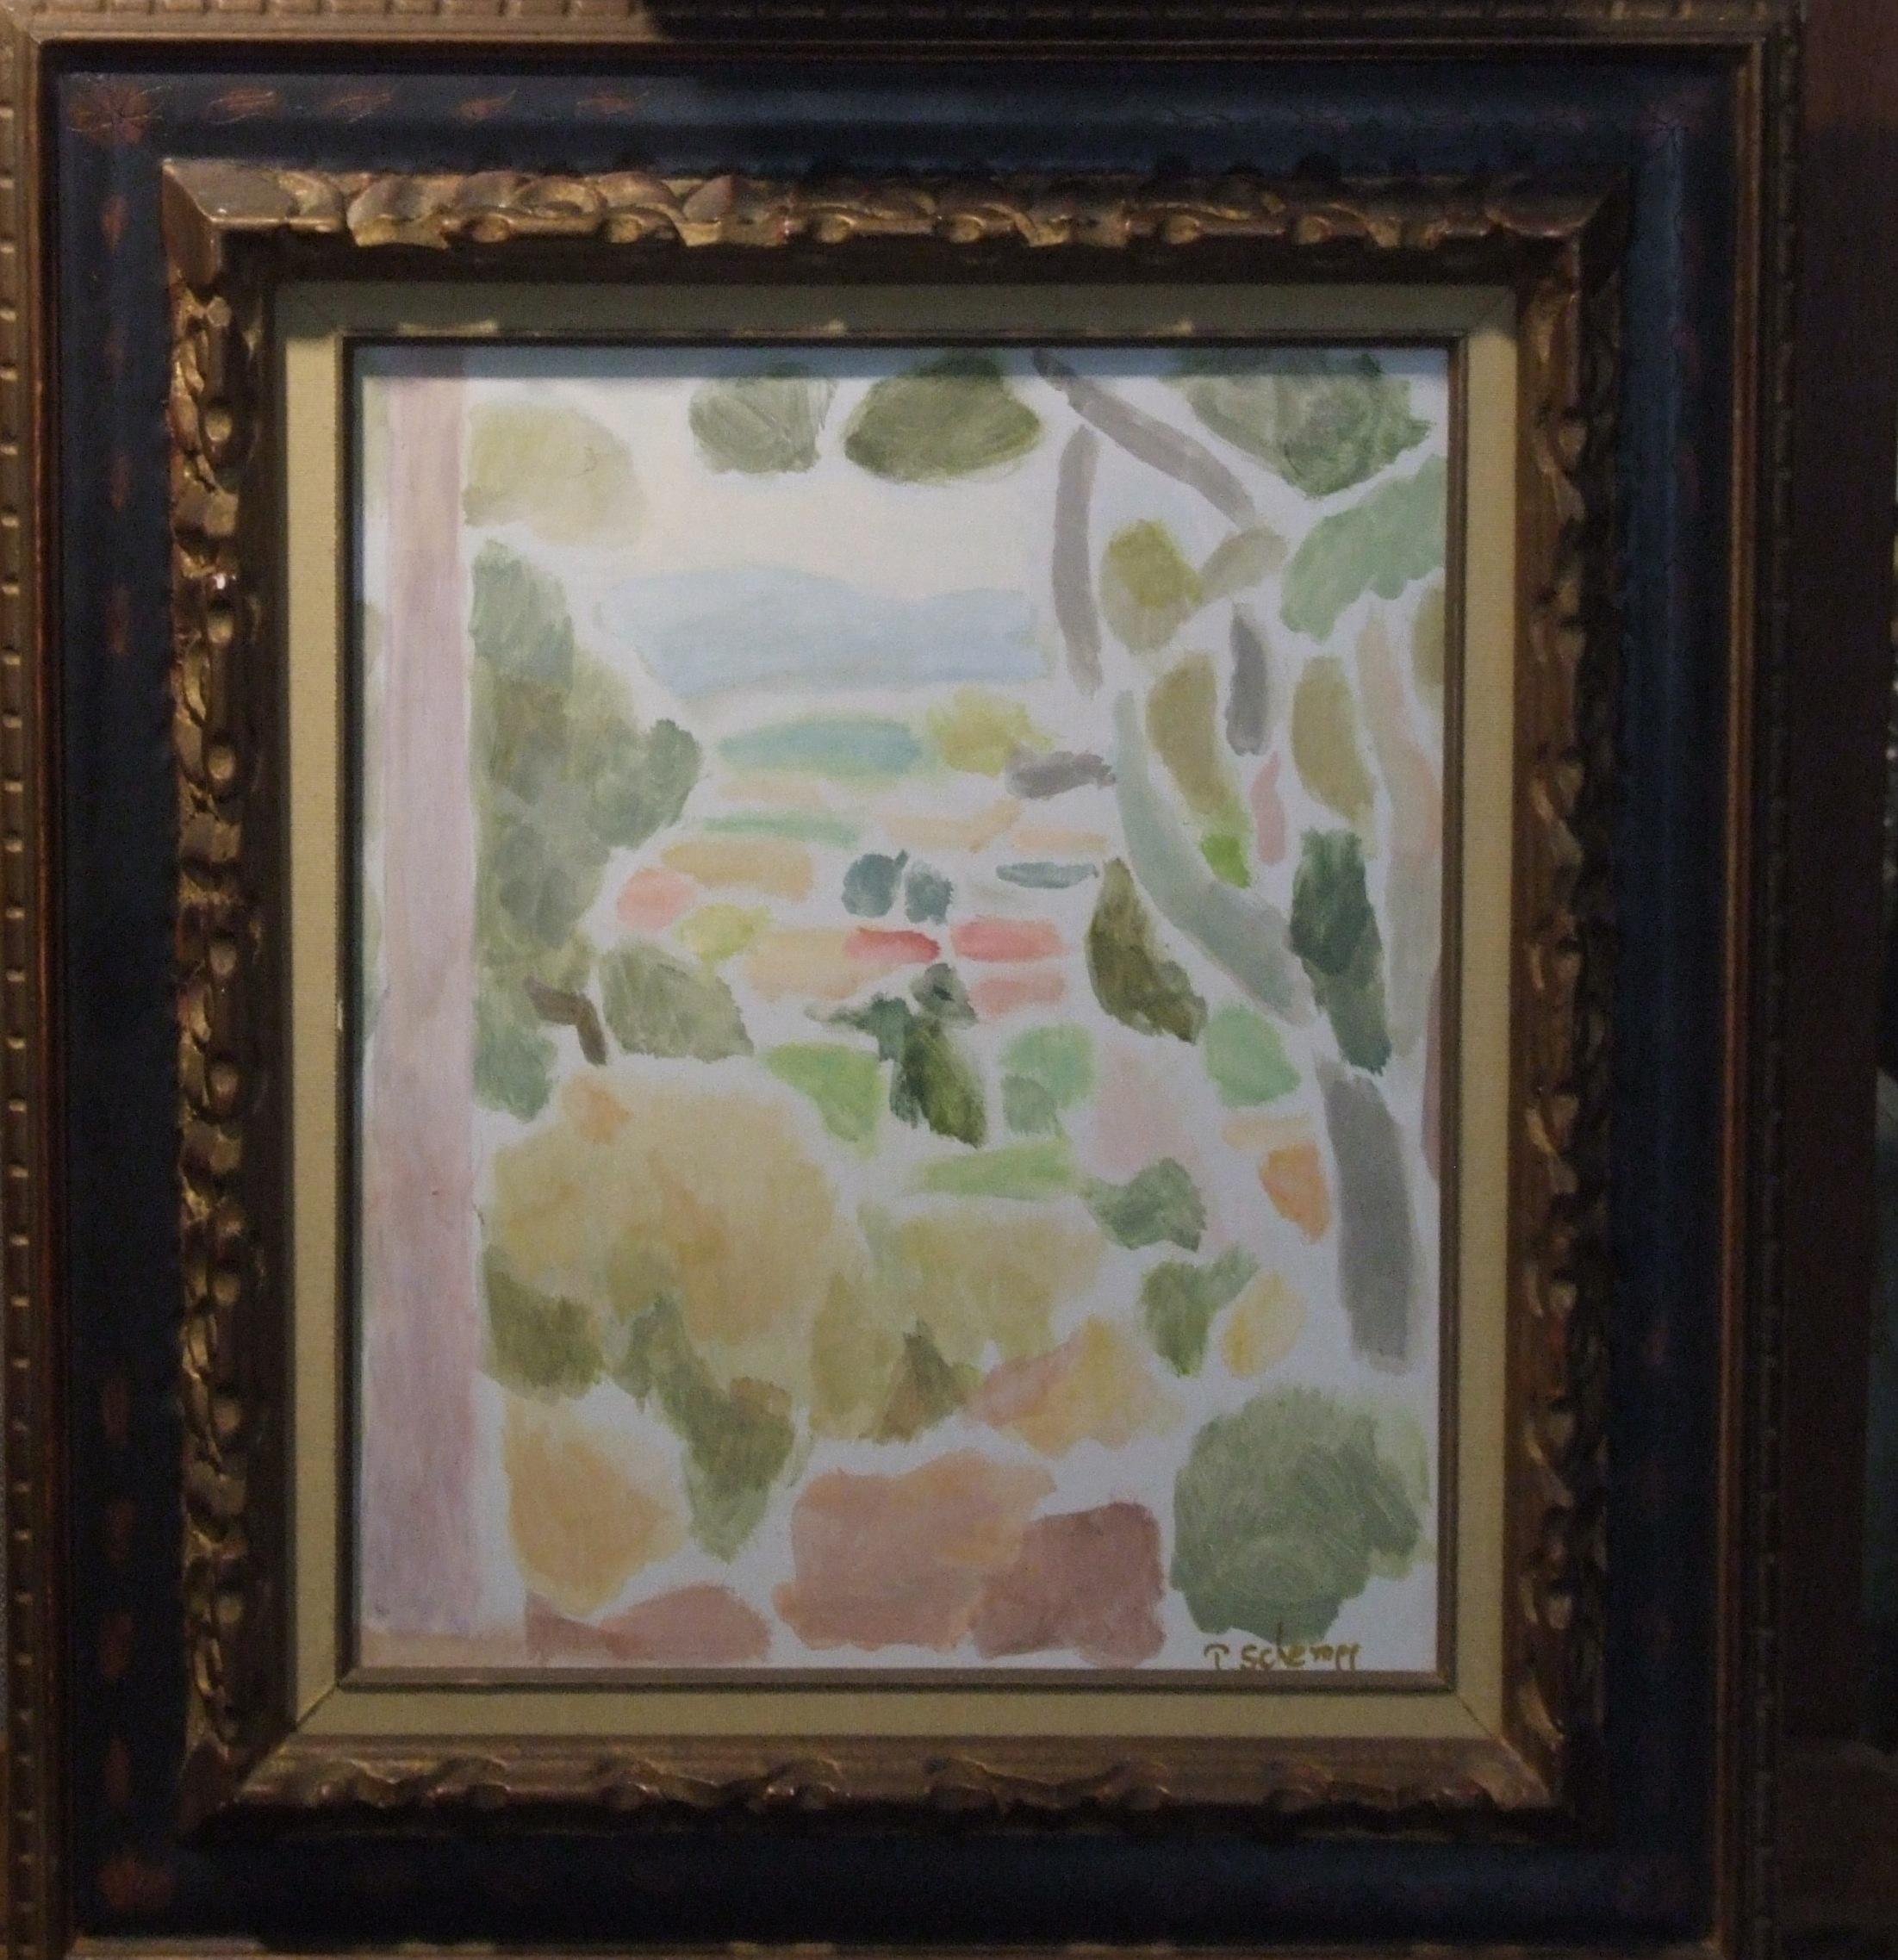 Paysage de la méditerranée, 1960 - Huile sur toile, 46x38 cm., encadré - Painting by Theodore Schempp